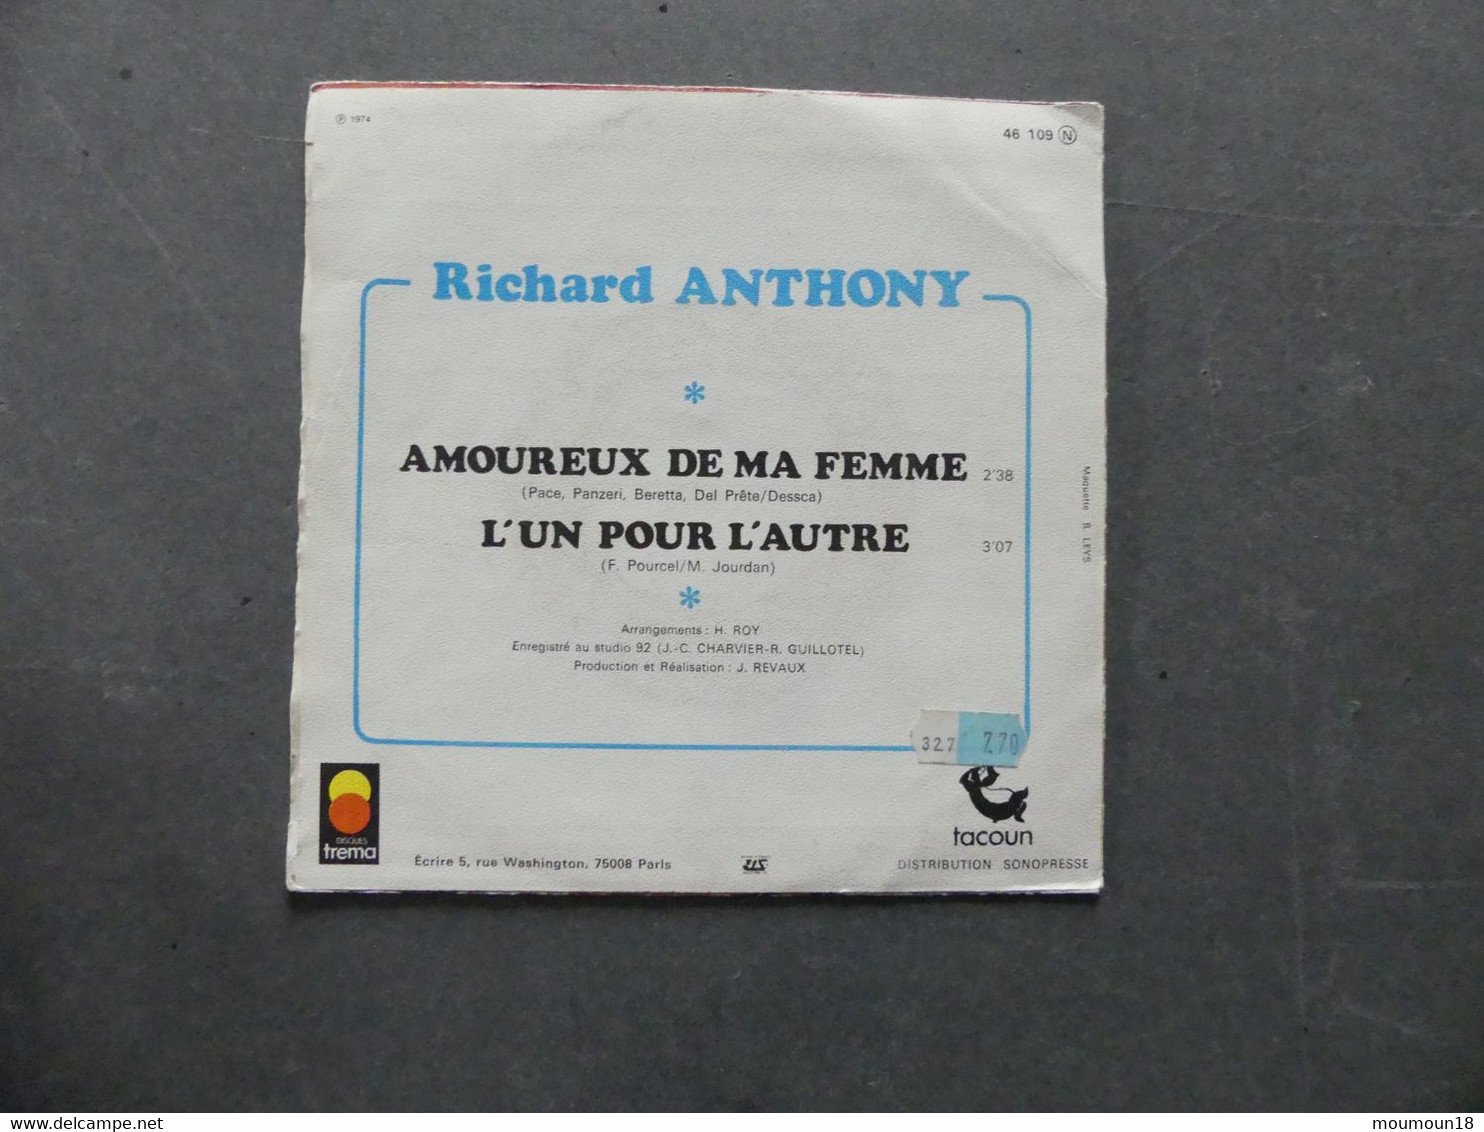 Richard Anthony Amoureux De Ma Femme 46109 Voir Centre Disque - 45 T - Maxi-Single